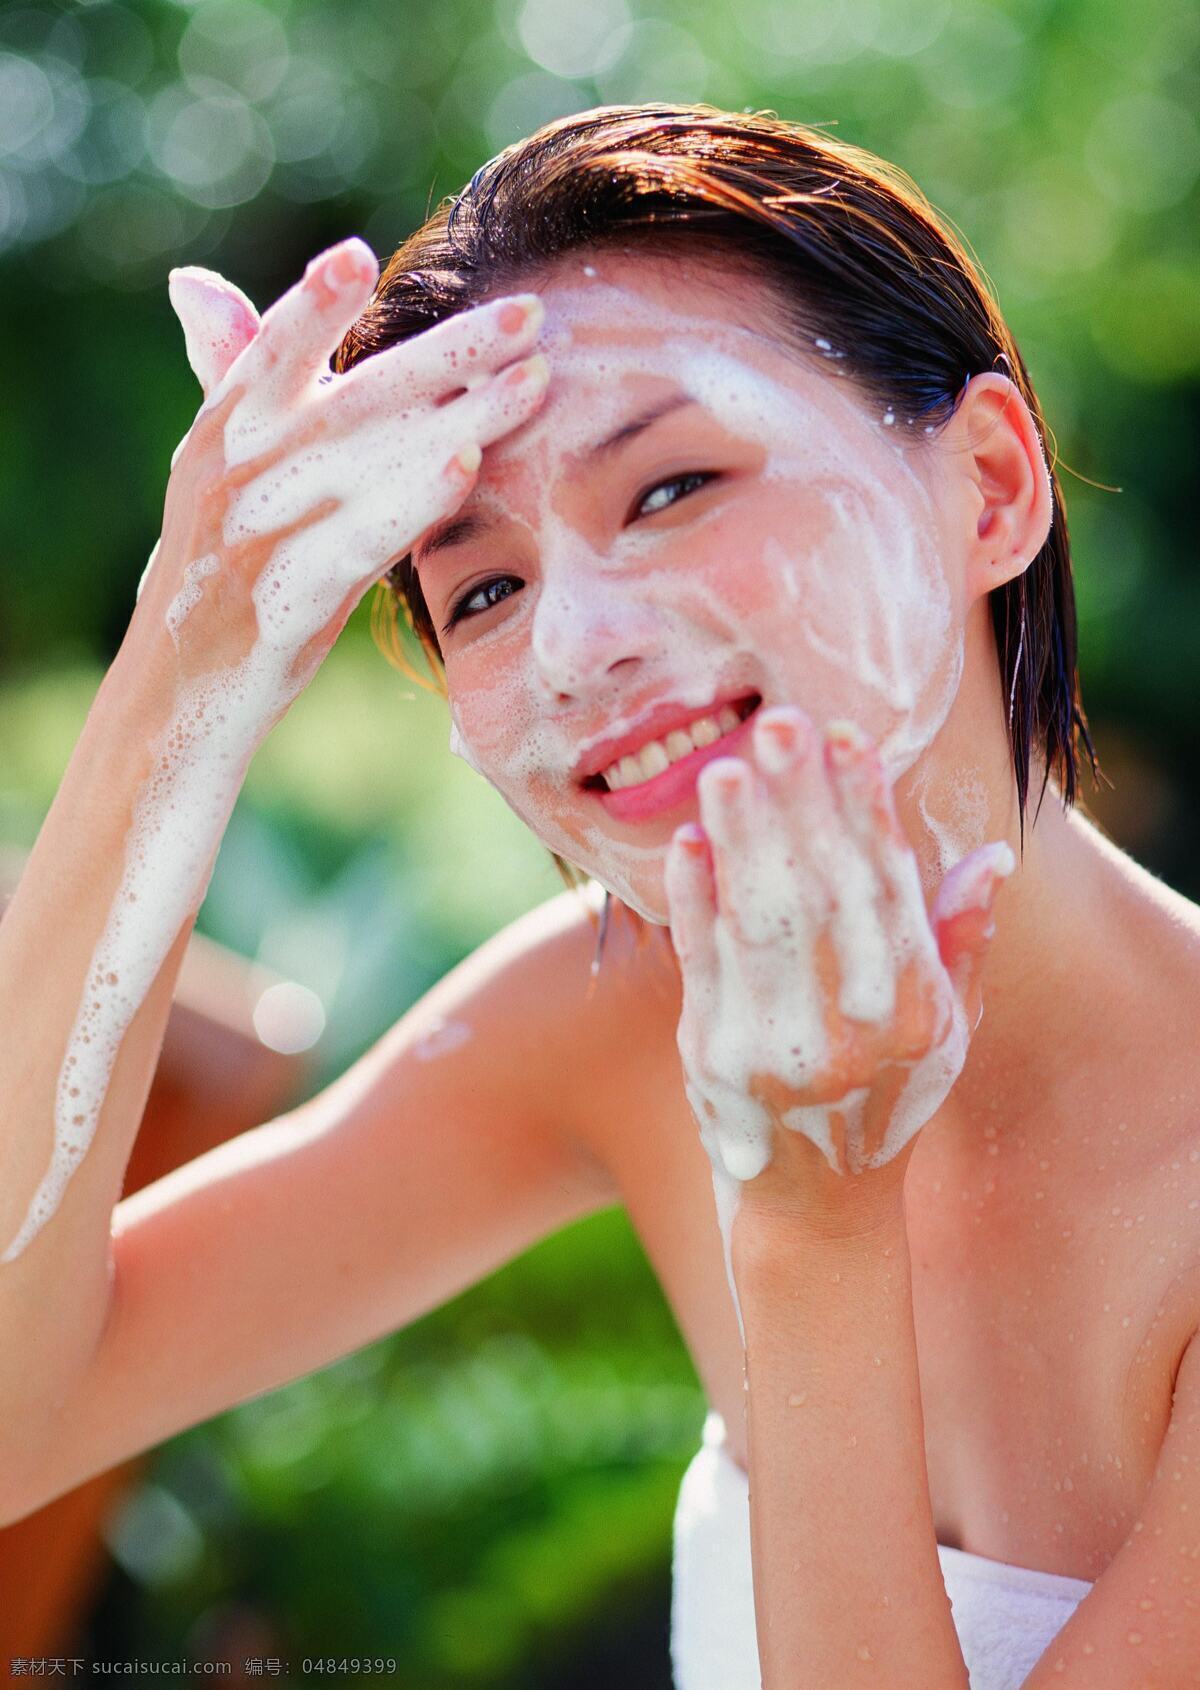 做 洁面 女孩 洗脸 水疗 美容 养生 护肤 spa 女性 女人 美体 生活人物 人物图片